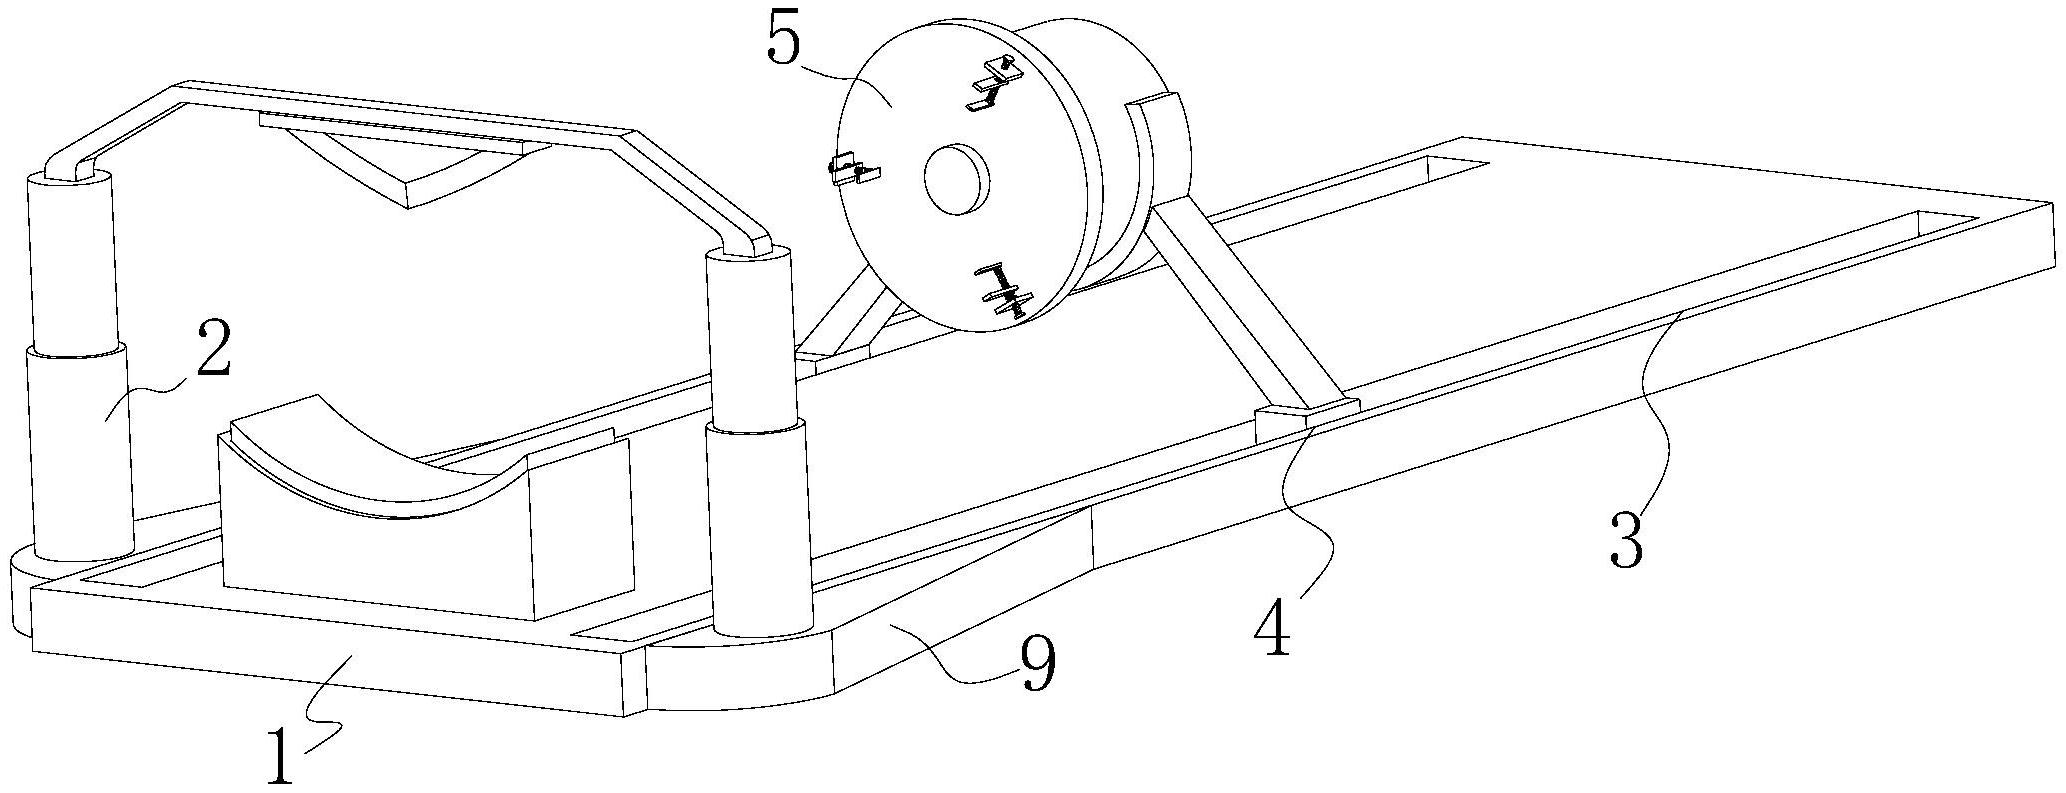 一种橡胶管道加工用切割装置专利图